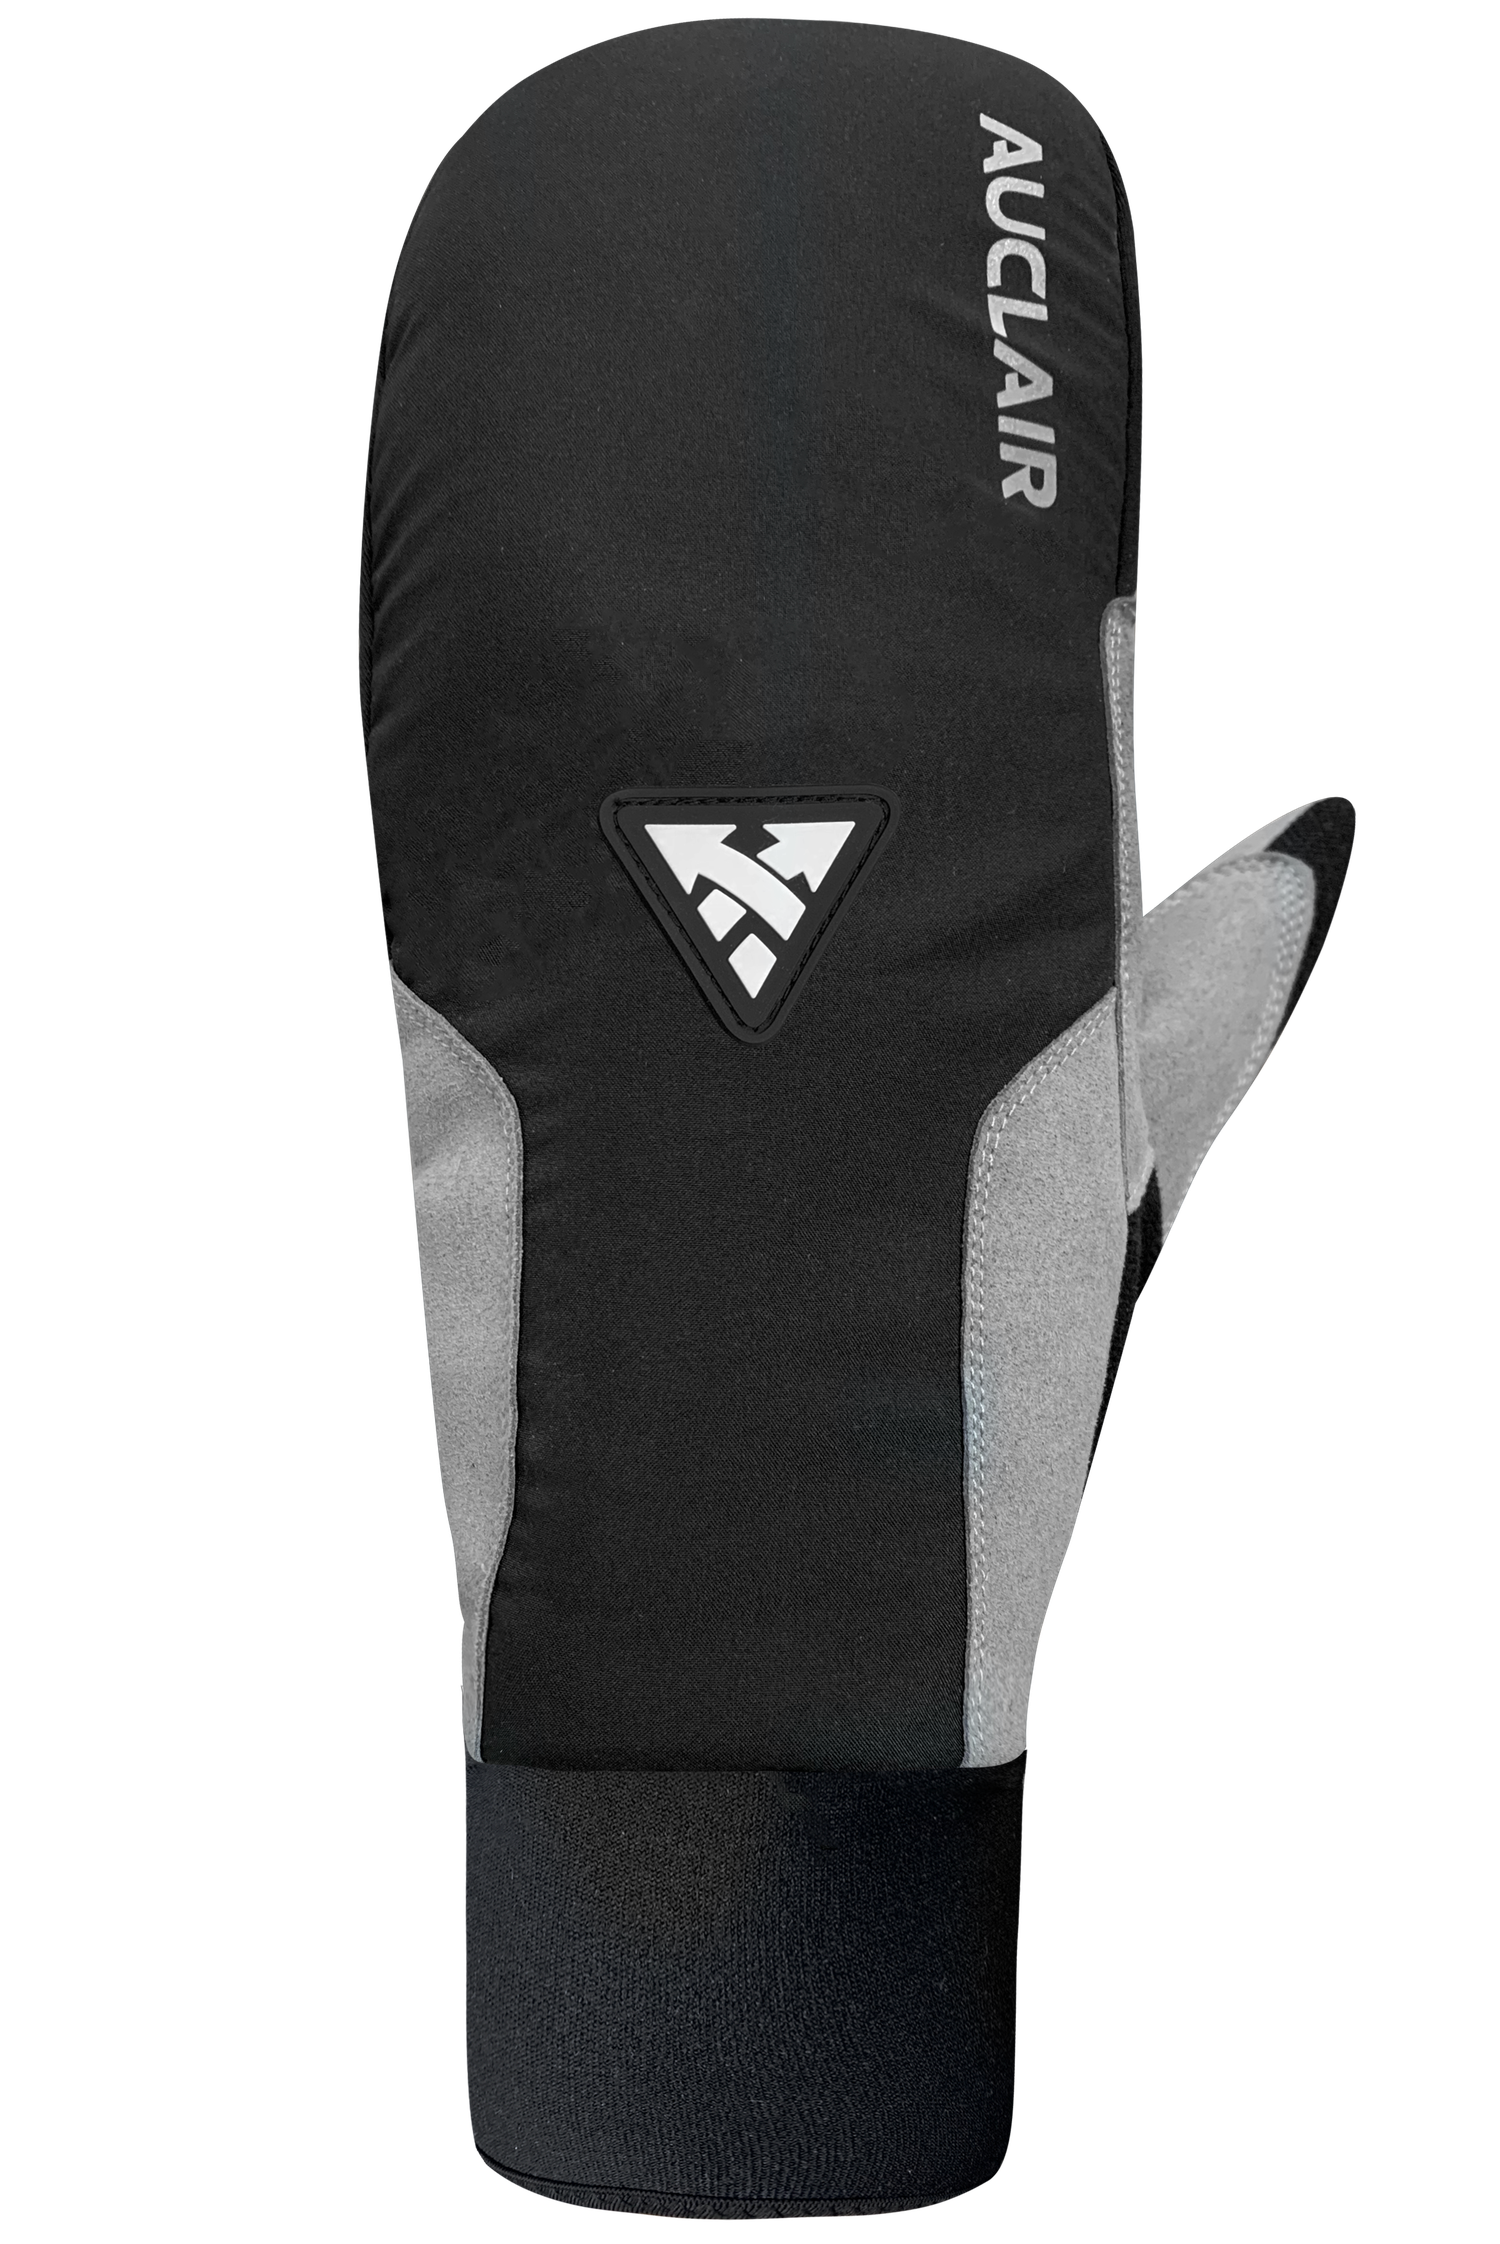 Stellar 2.0 Mitts - Women-Glove-Auclair Sports-S-Black/Grey-Auclair Sports